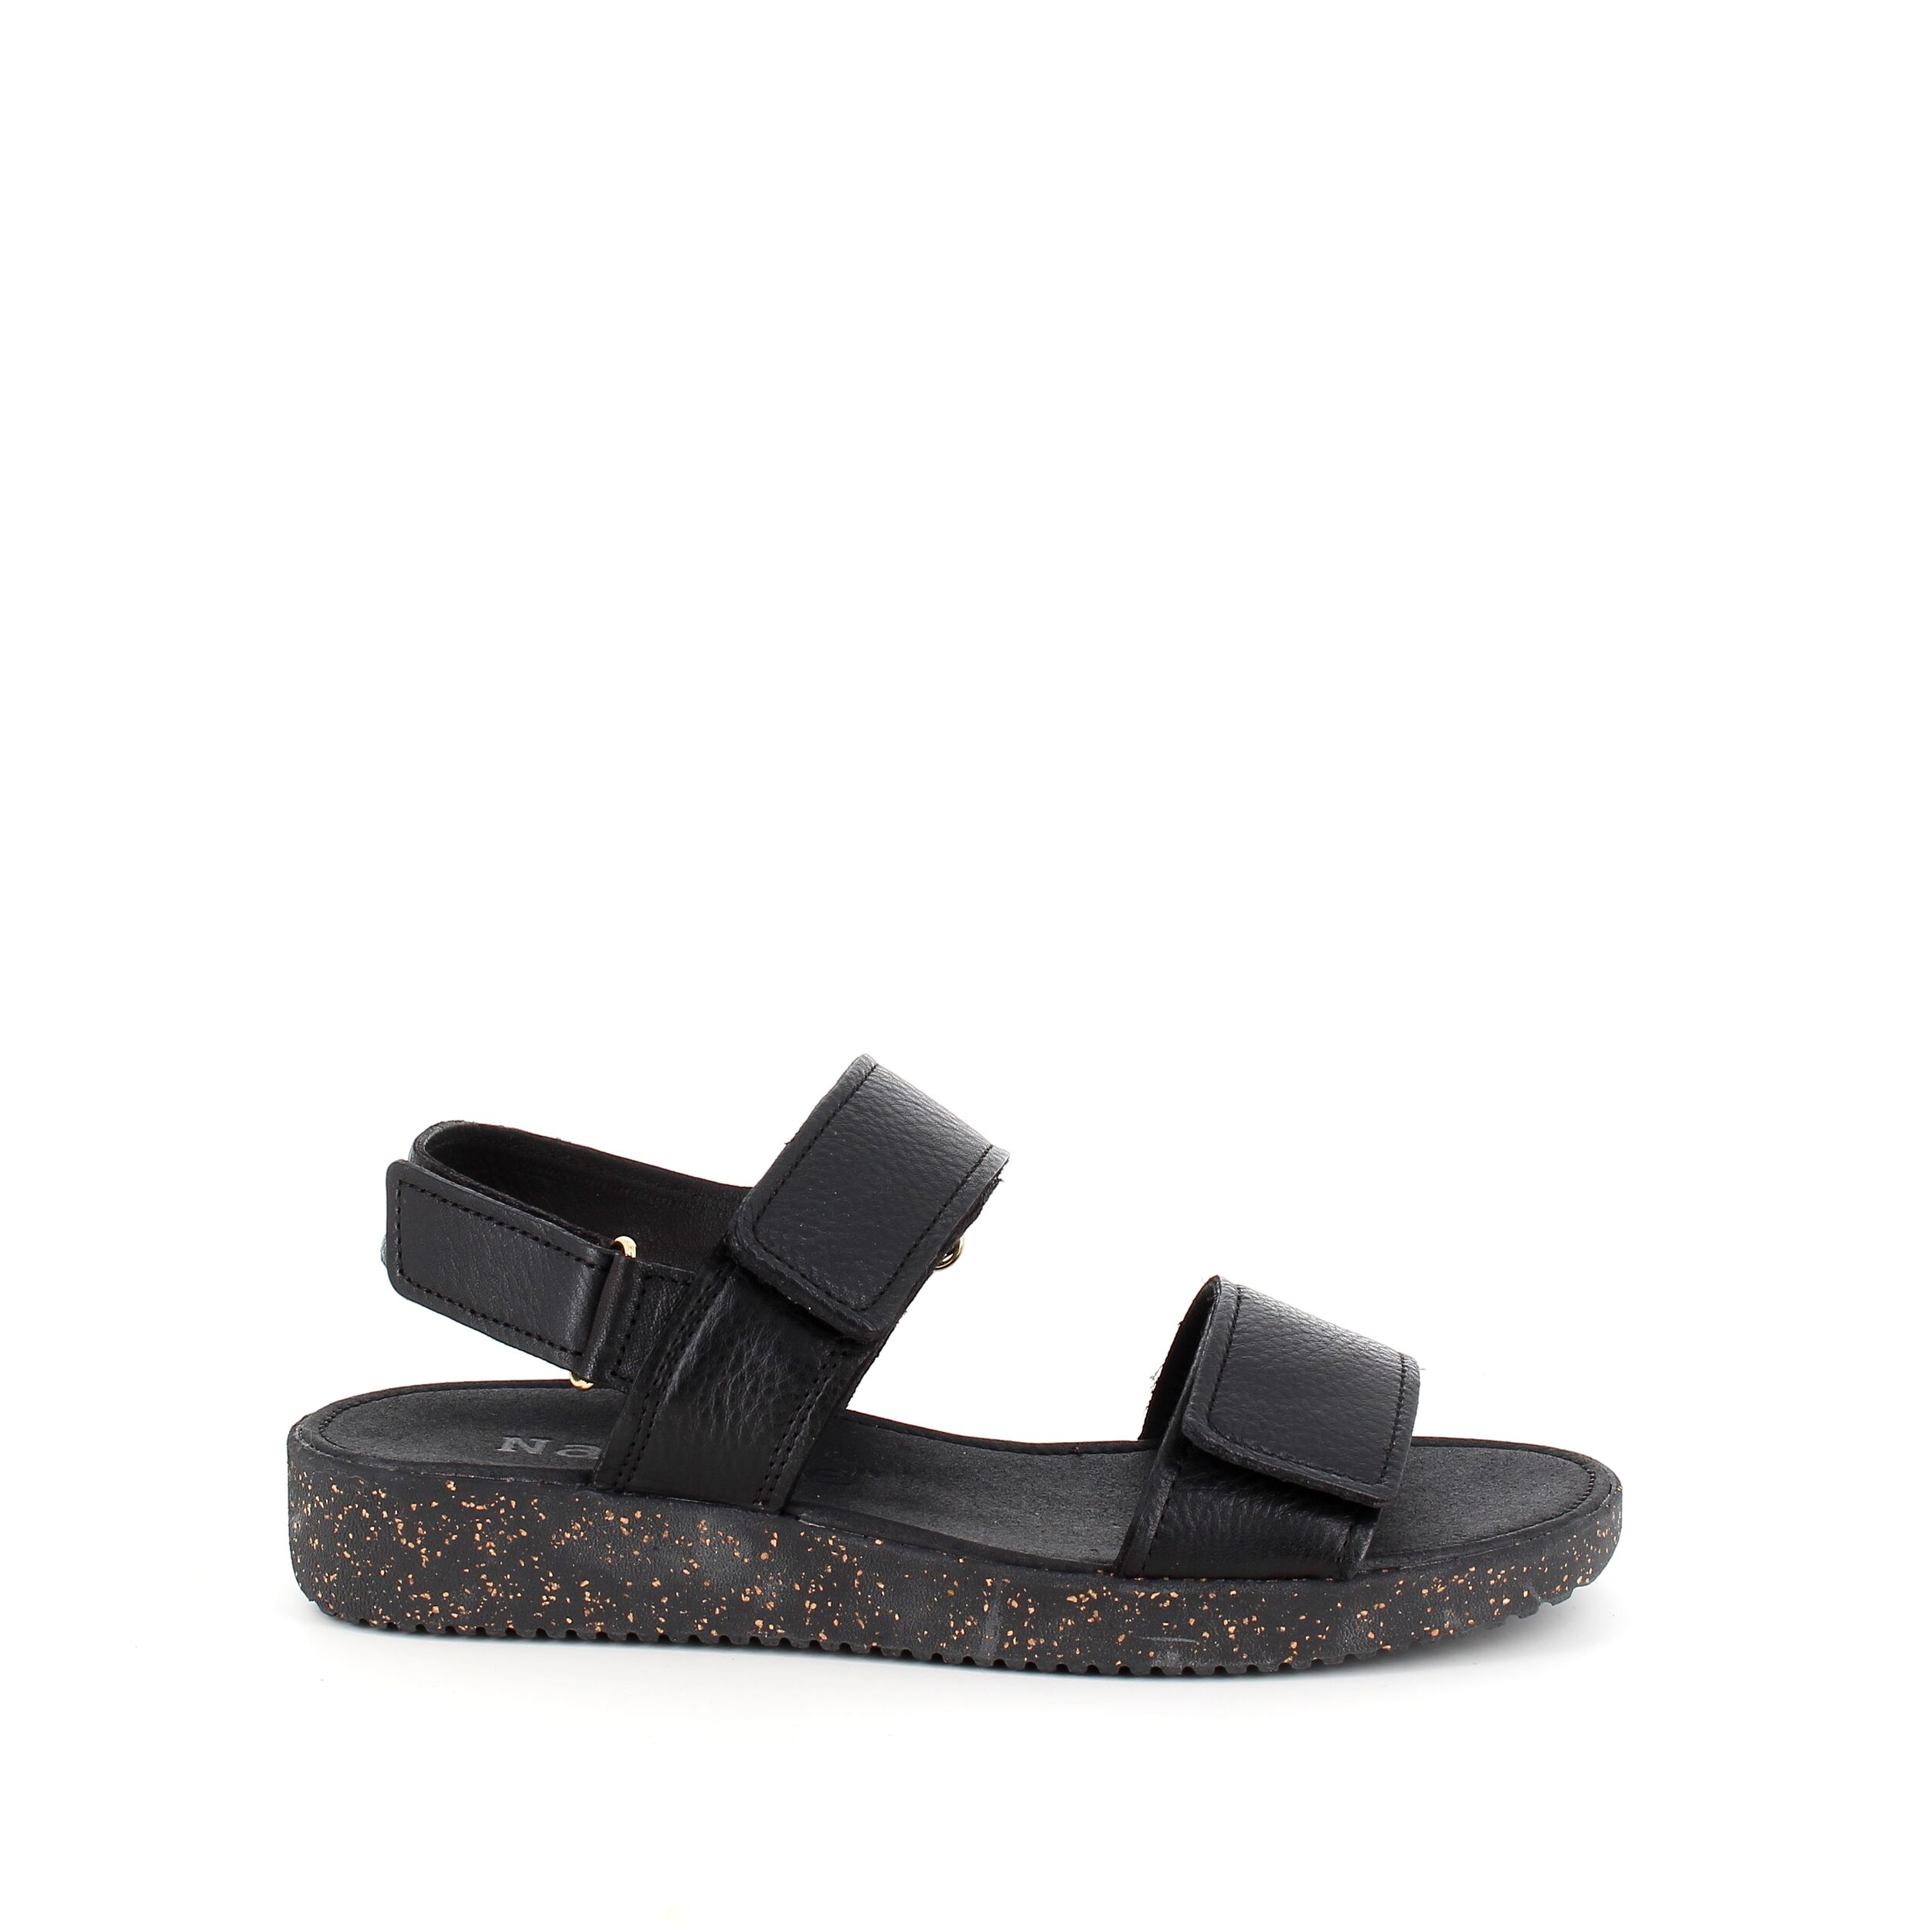 Se Nature sandal i sort skind med sorte såler - 38 hos Sygeplejebutikken.dk